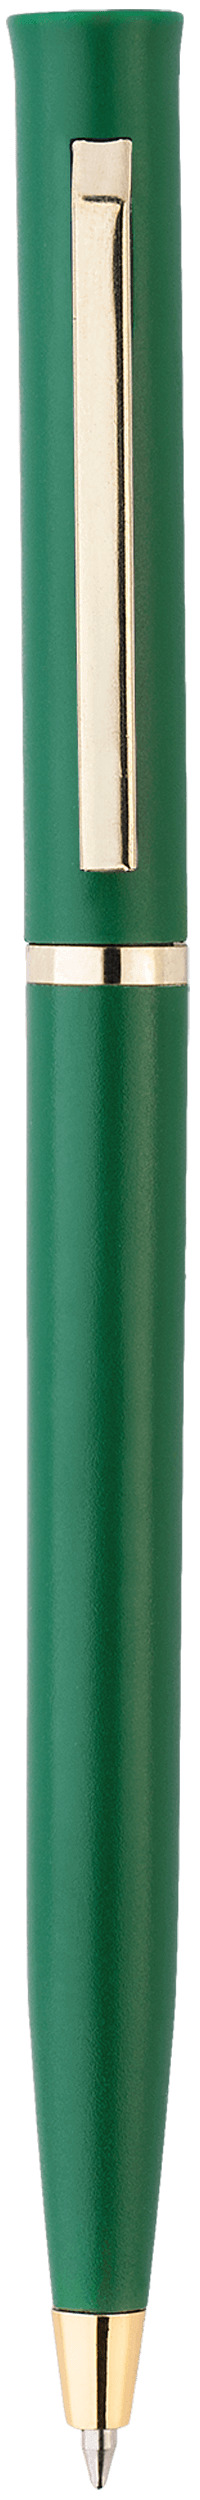 Шариковая ручка Europa Gold, зелёная, вид сбоку